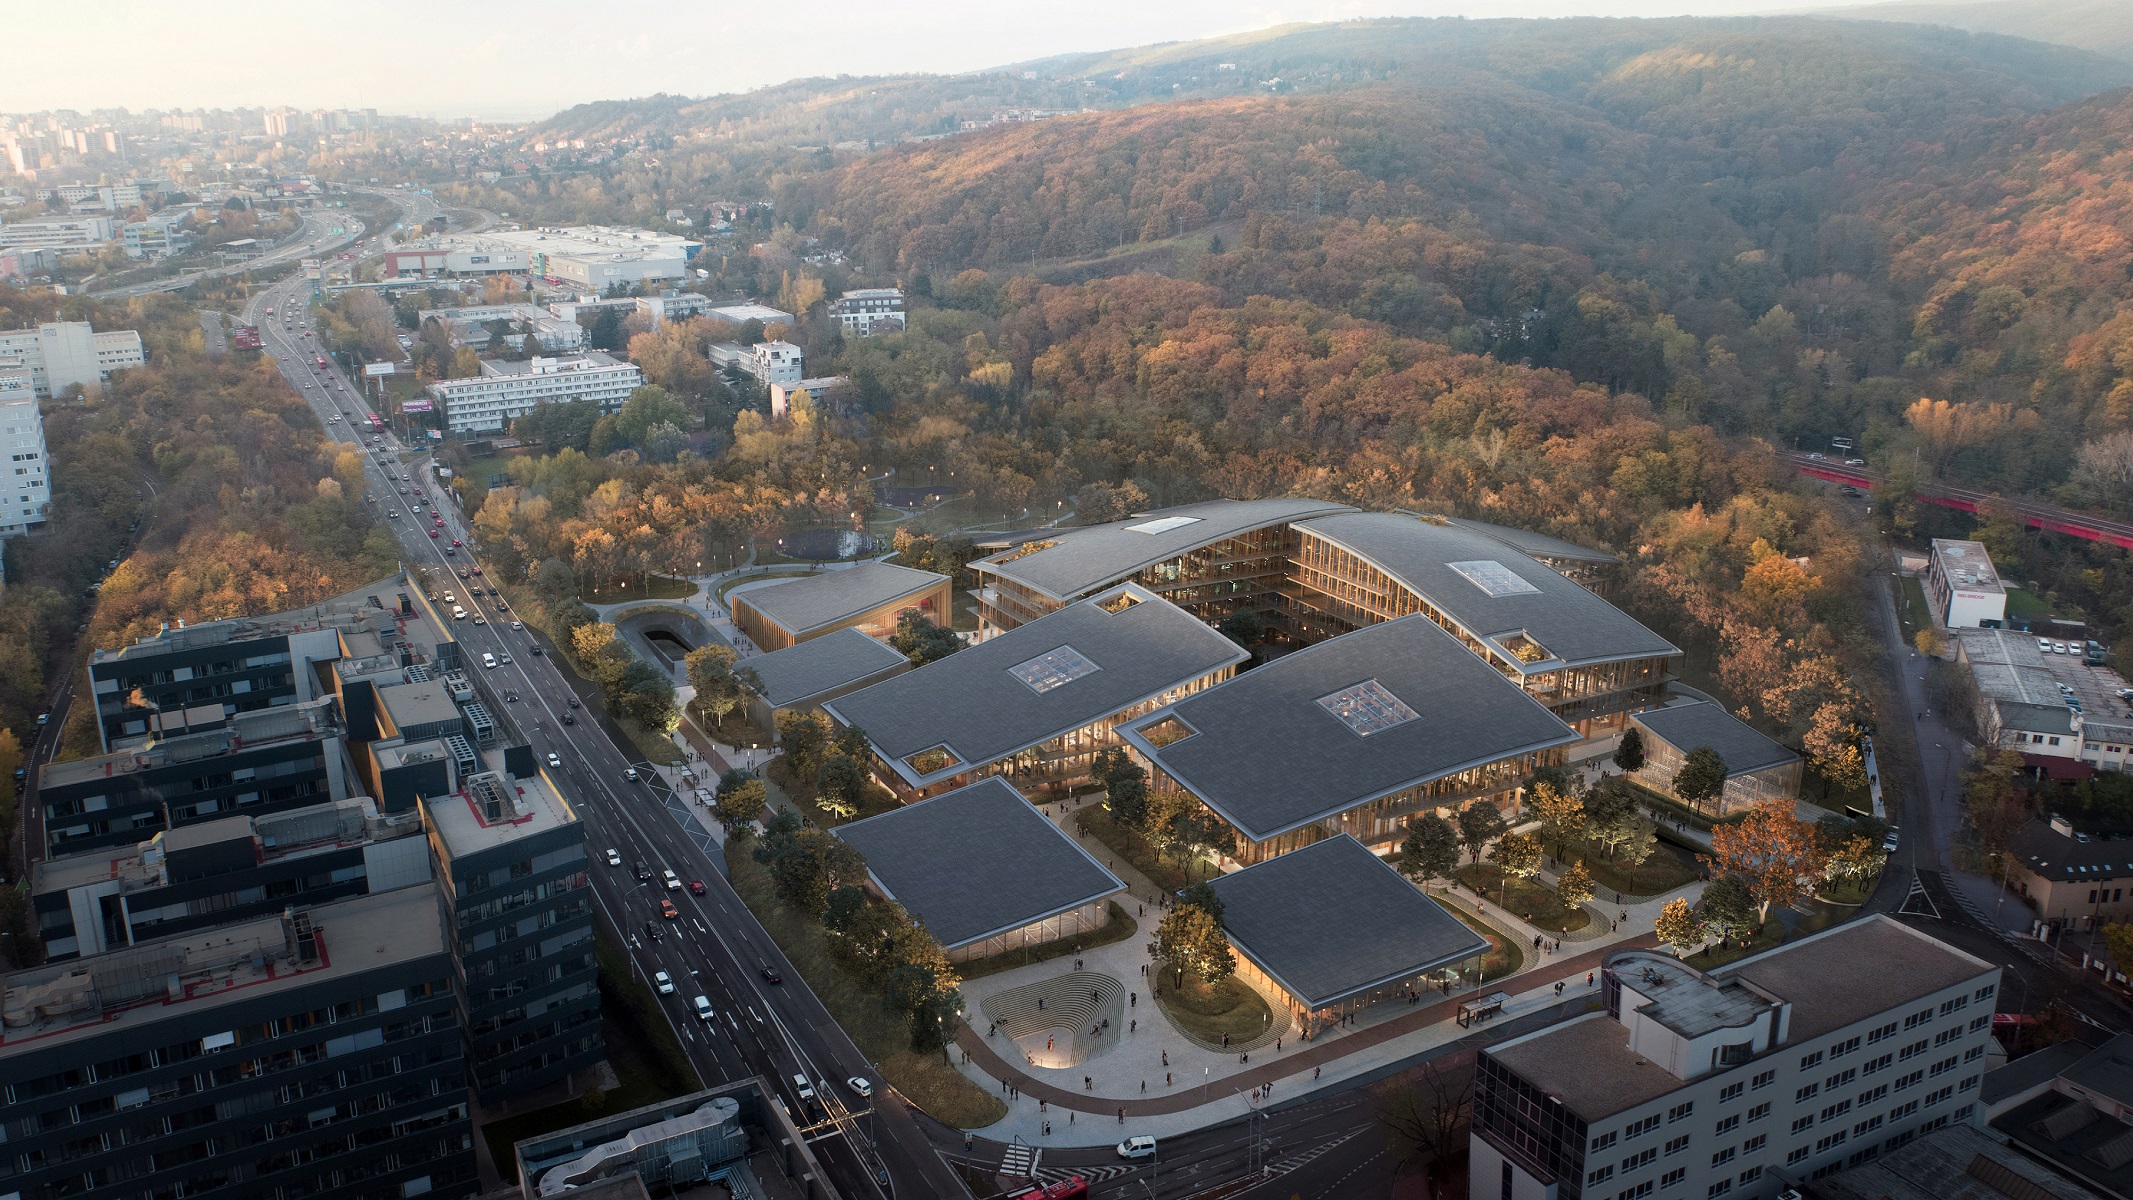 Sídlo spoločnosti ESET – ESET Campus 
– je výsledkom dvojročnej spolupráce firiem ESET a BIG-Bjarke Ingels Group. Generálnym projektantom diela 
je architektonický ateliér PANTOGRAPH.